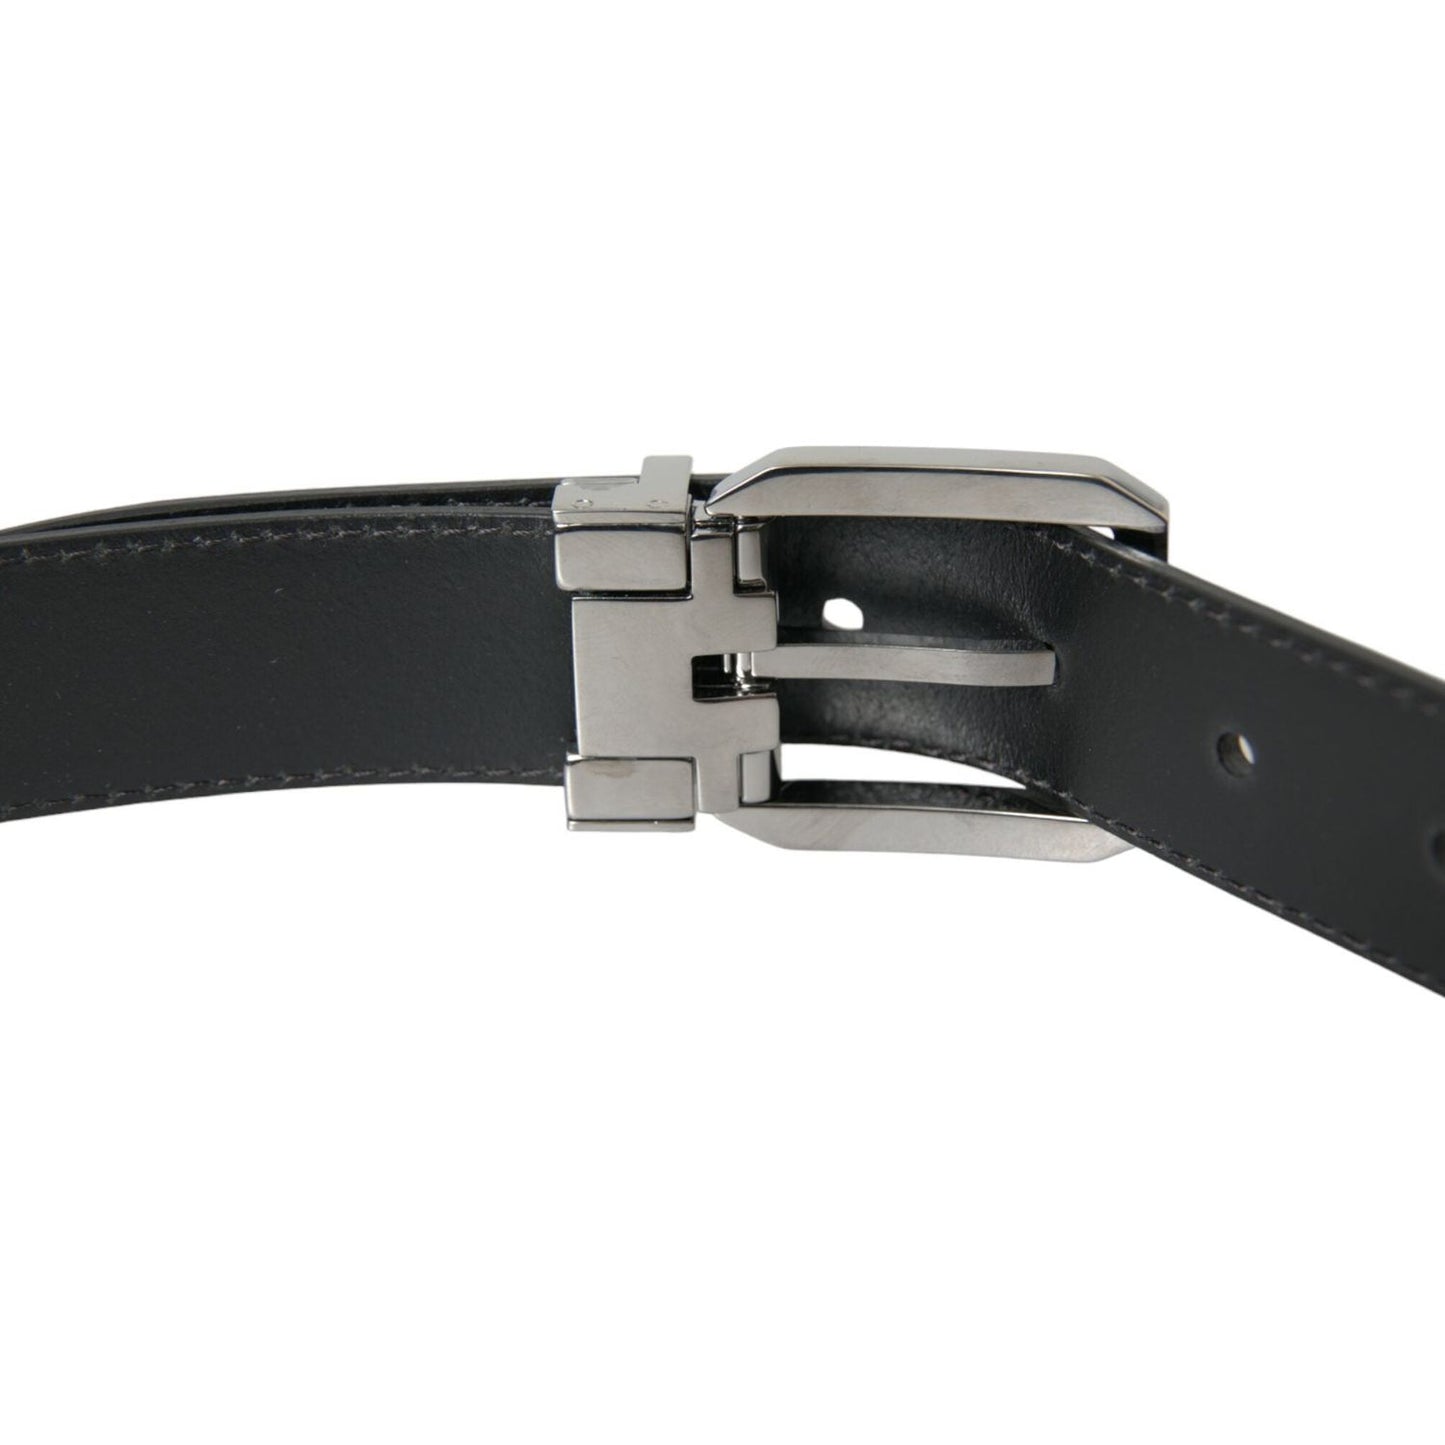 Dolce & Gabbana Black Leather Silver Metal Buckle Belt Men black-leather-silver-metal-buckle-belt-men-1